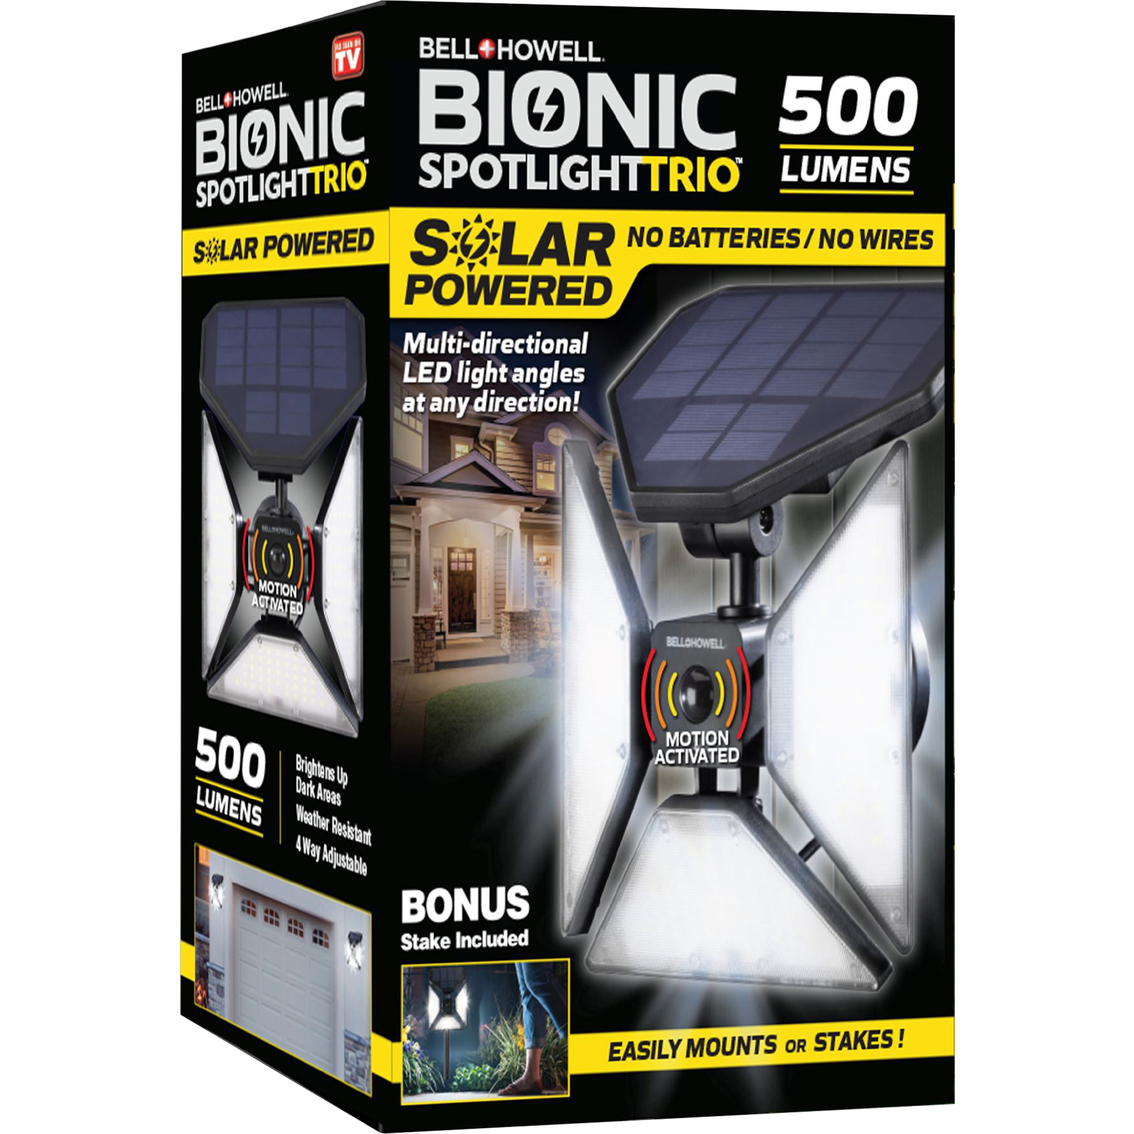 Bell & Howell Bionic Spotlight Trio Solar Powered LED Light - Image 2 of 2